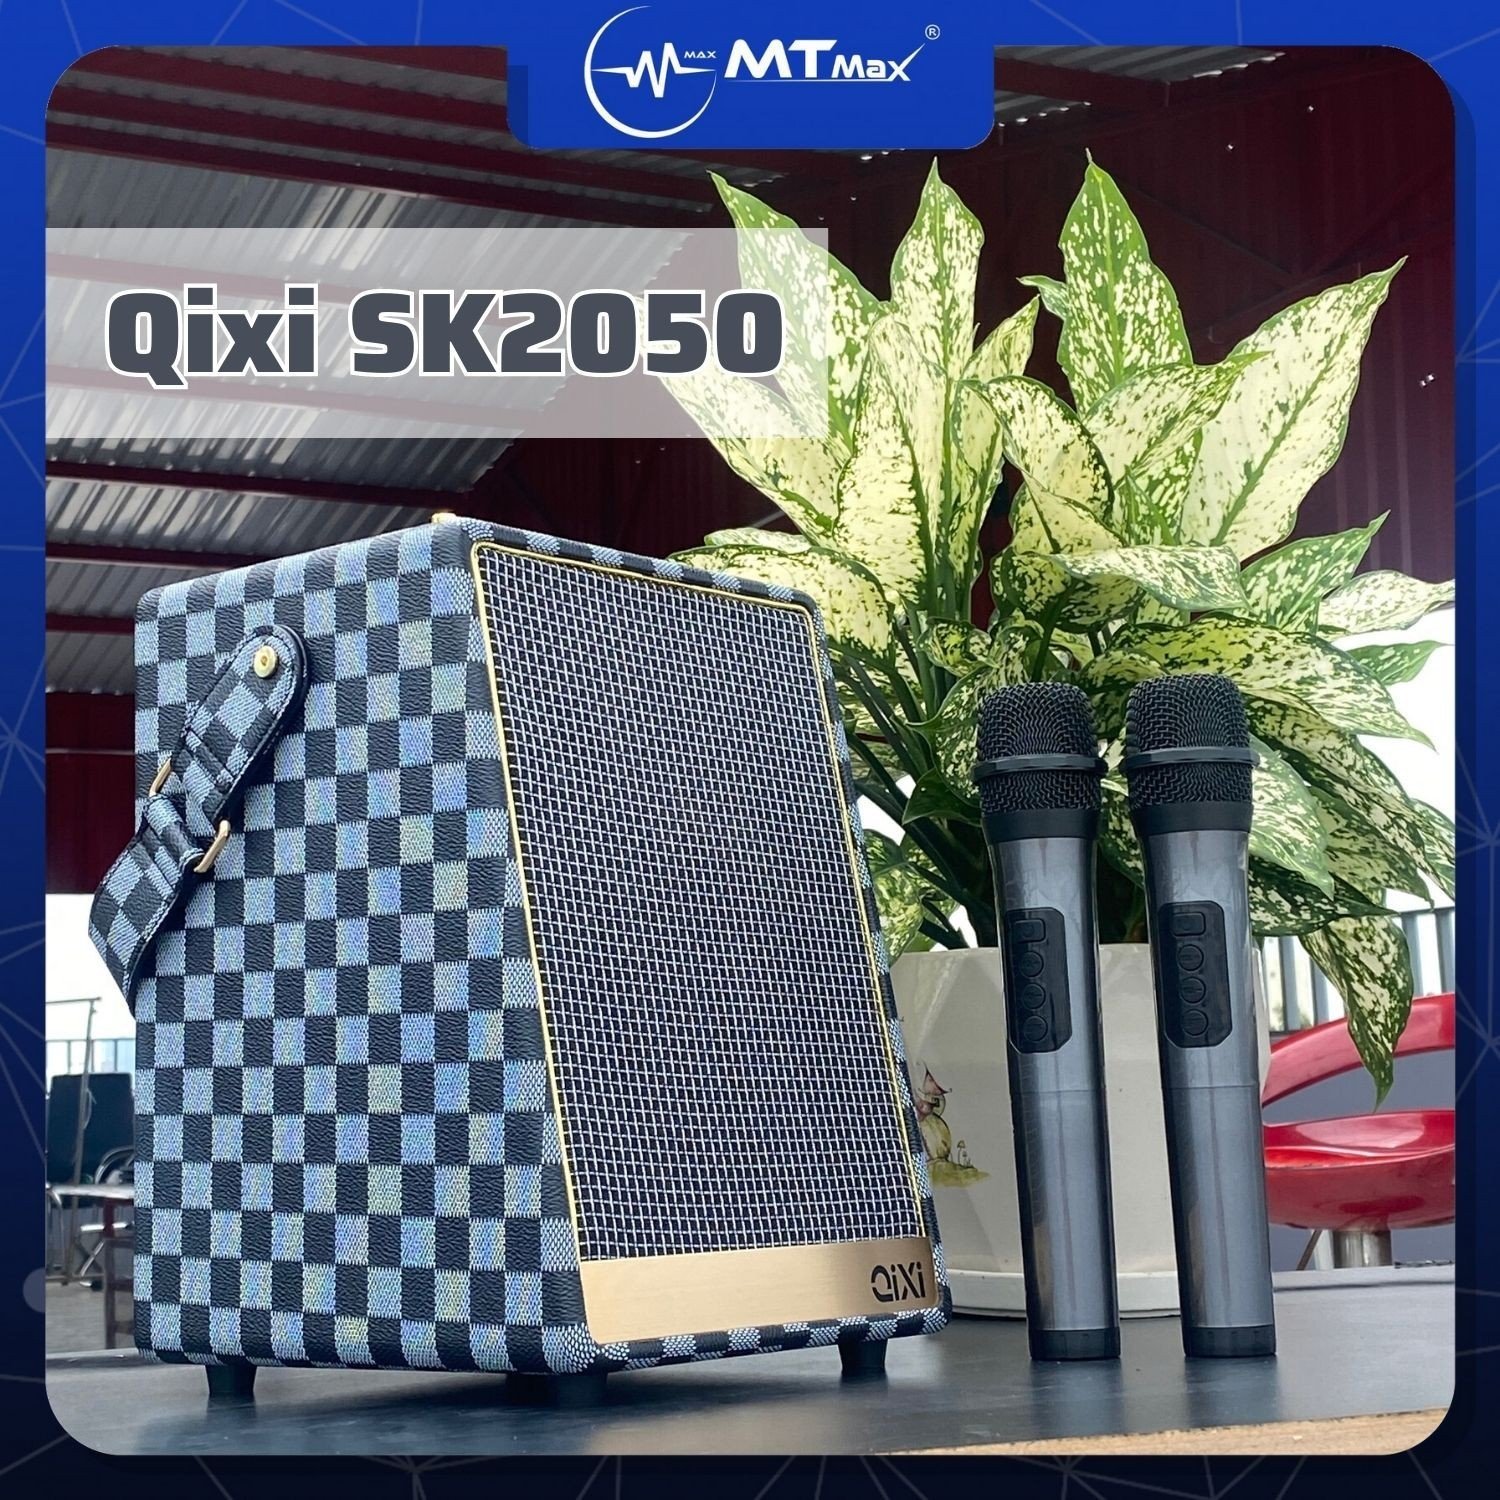 Loa Karaoke Bluetooth Qixi SK2050 - Âm Bass Mượt Mà, Pin 3600mah Và 2 Micro Không Dây Đi Kèm, Đáp Ứng Mọi Nhu Cầu Thưởng Thức Âm Nhạc